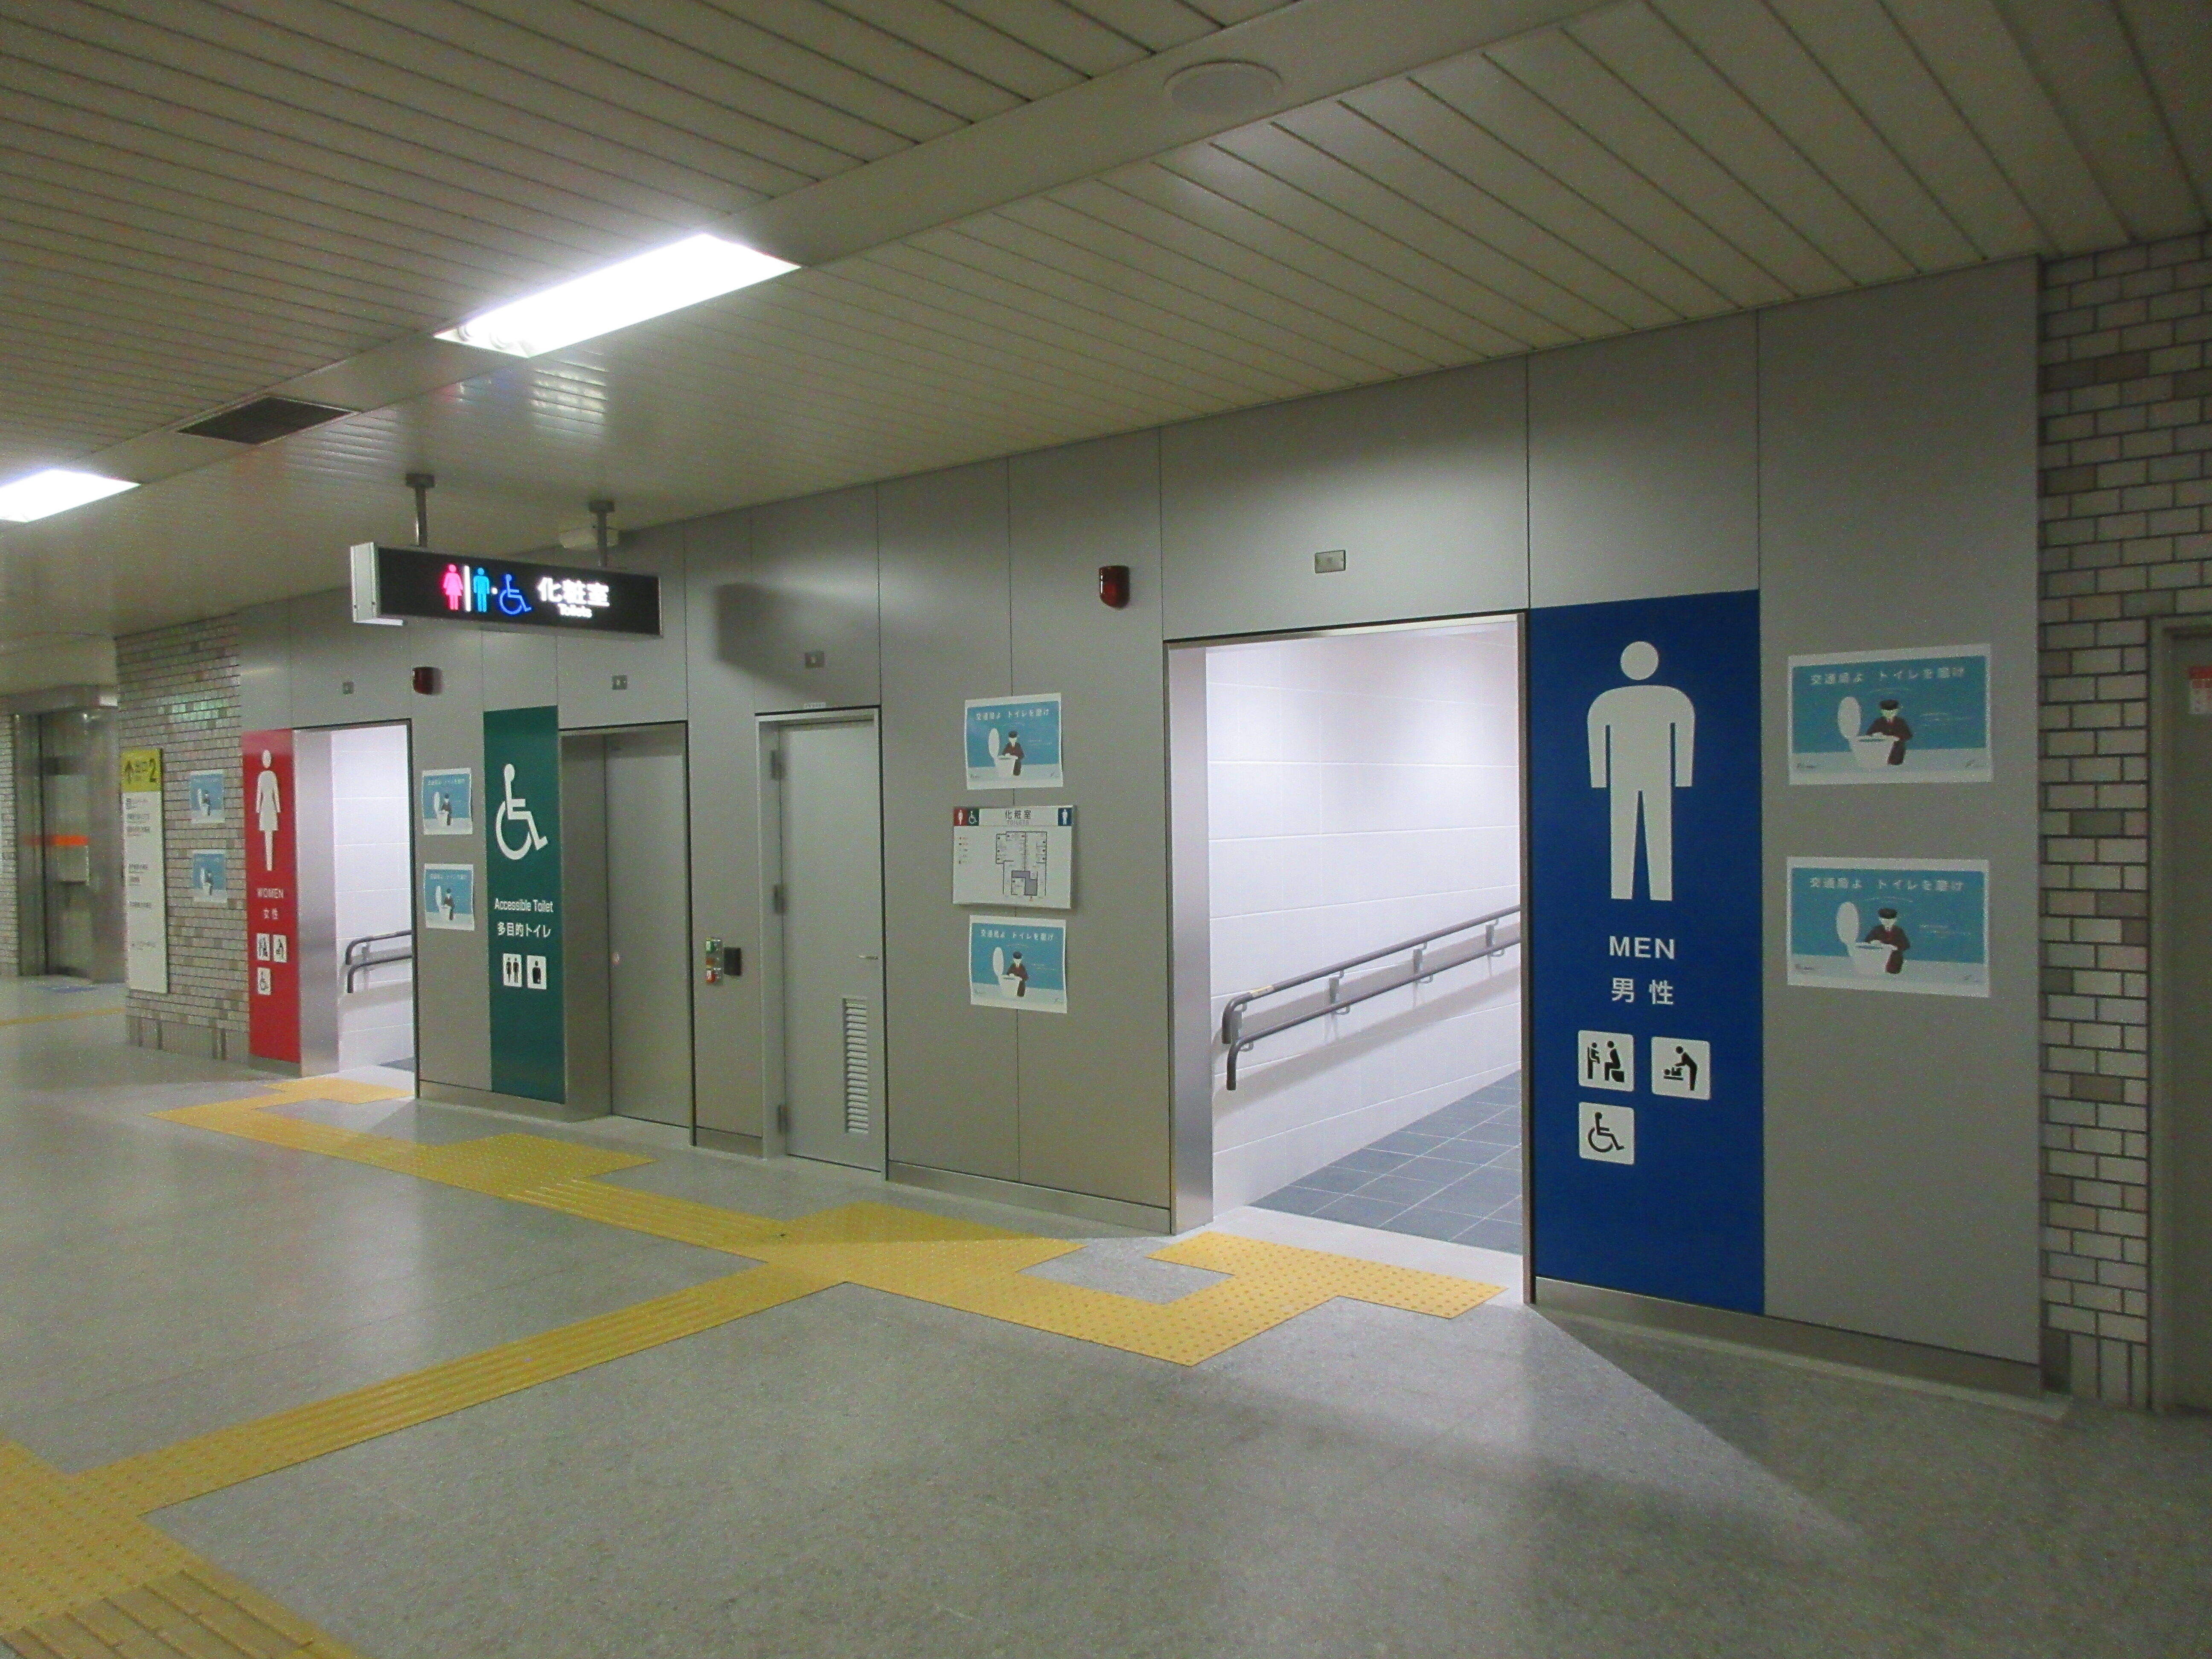 トイレ設備調査日記atosatu 札幌市営地下鉄東豊線福住駅。